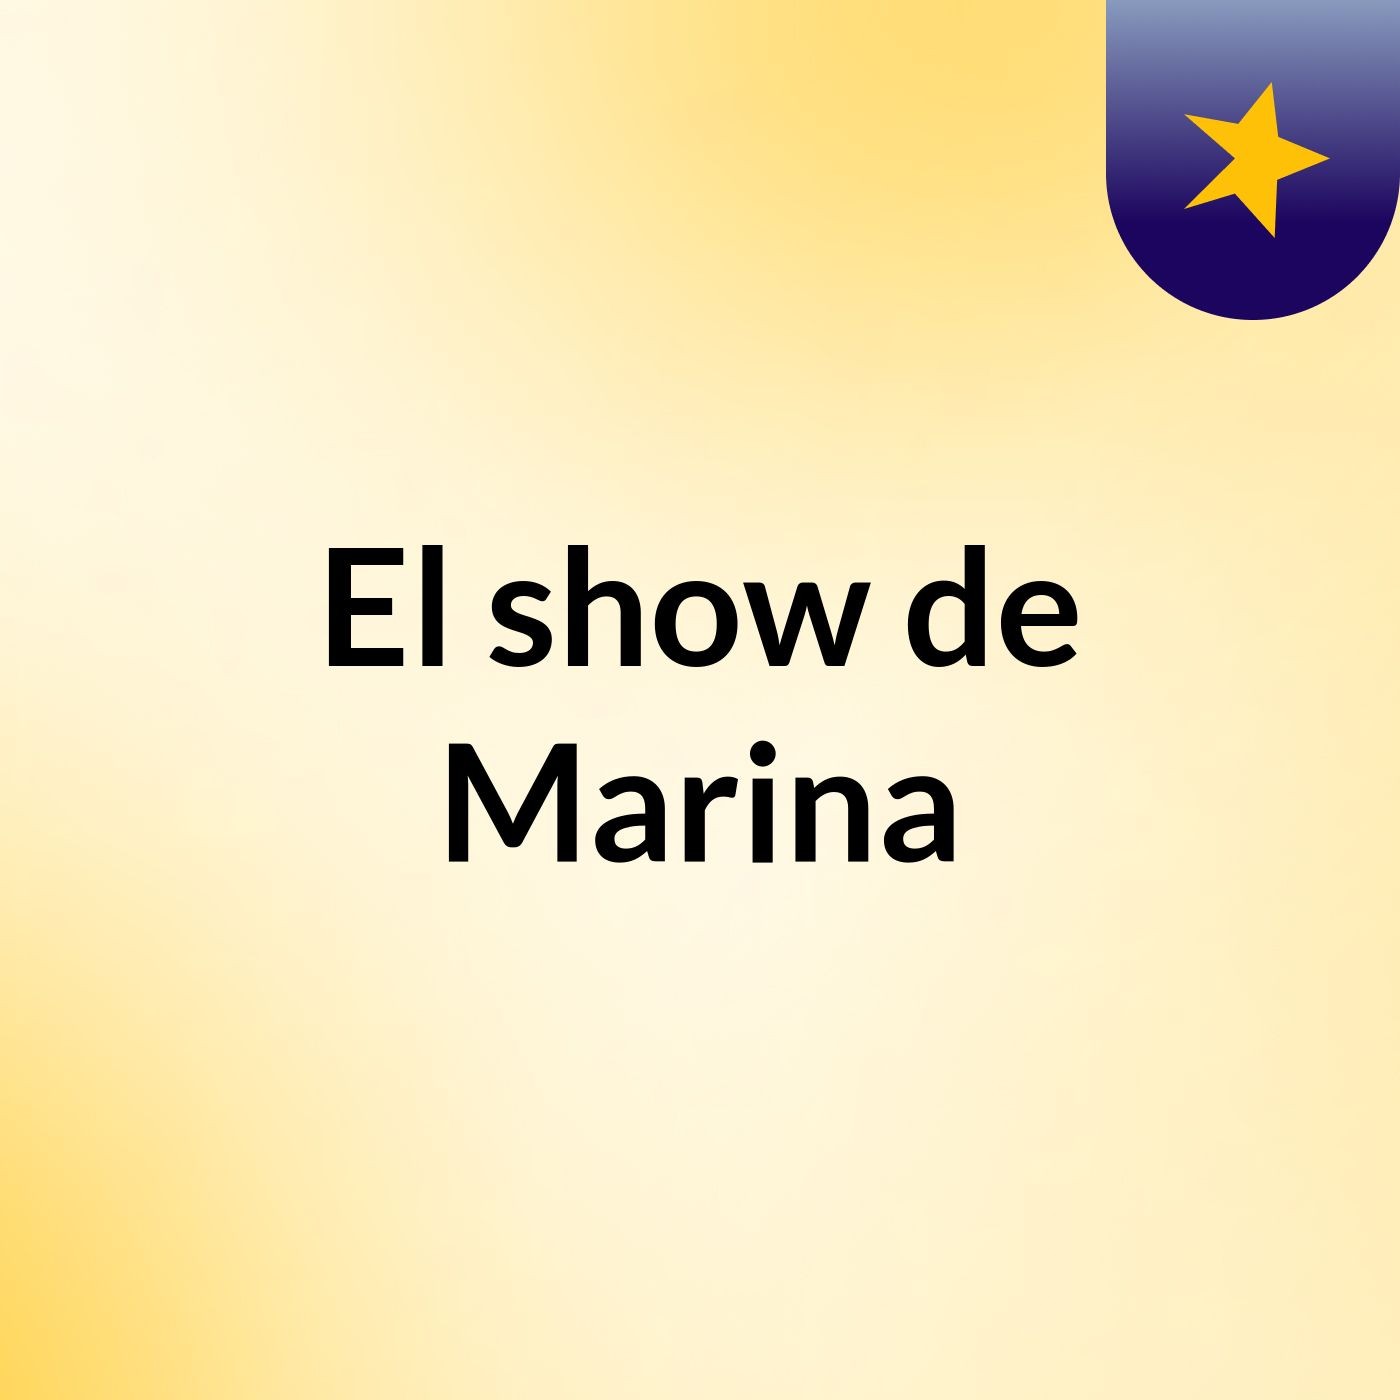 El show de Marina